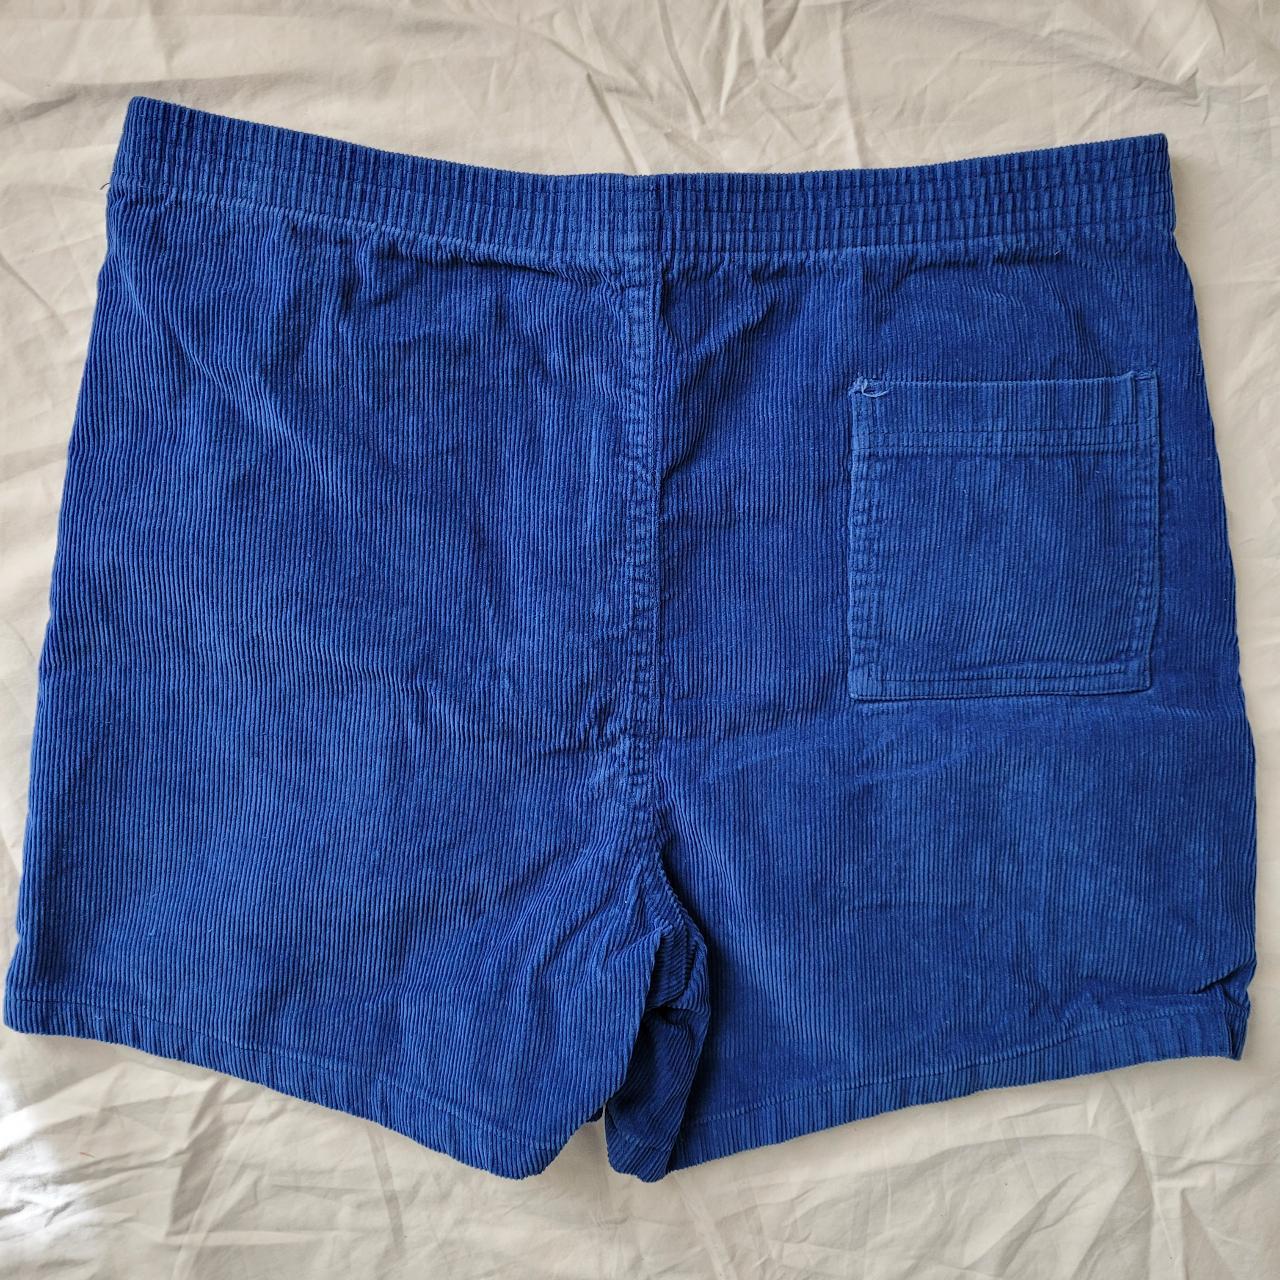 Blue Vintage Corduroy Shorts cotton men's 34 inch... - Depop